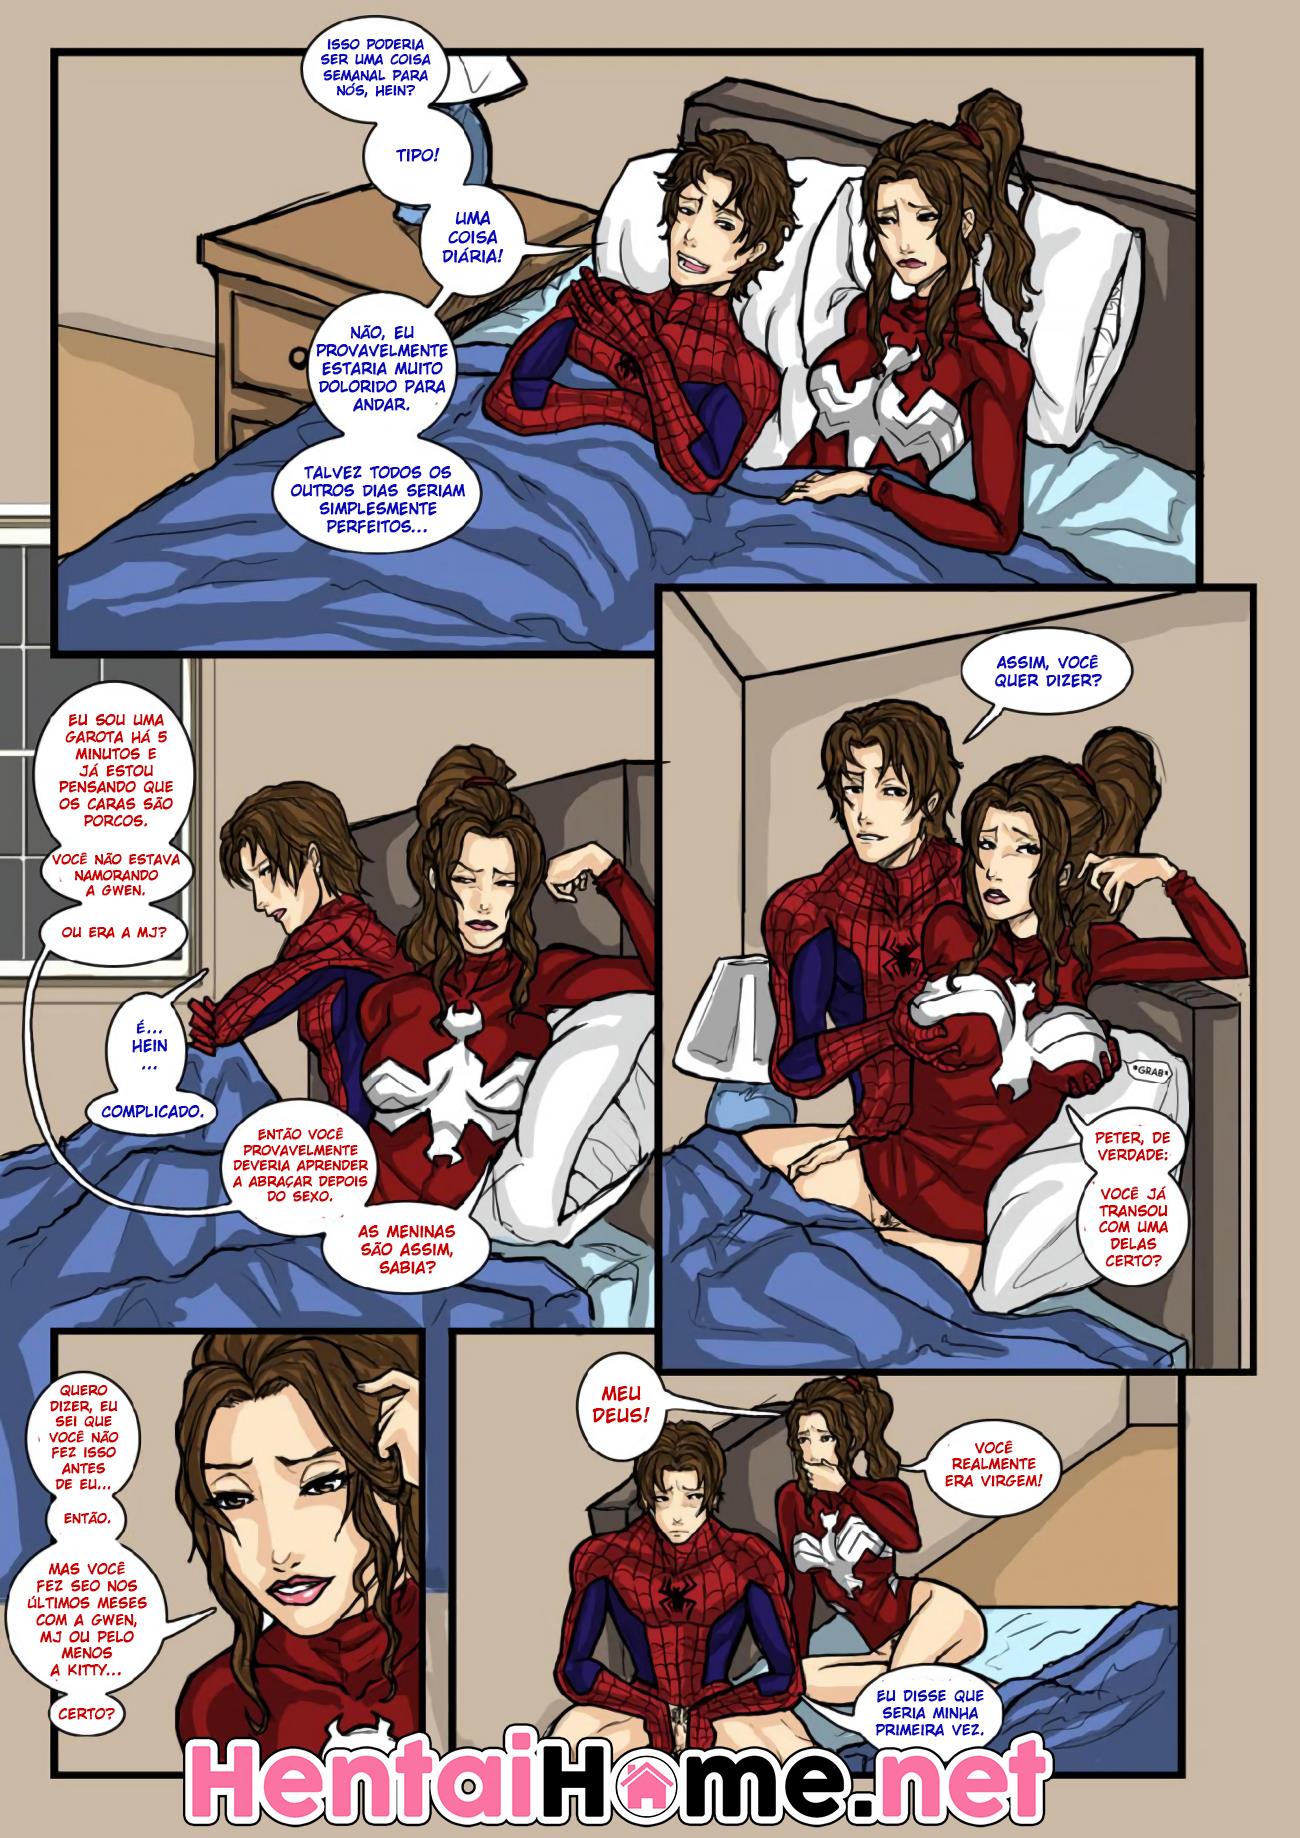 Sipder-man em: Spidercest, transando com a irmã!